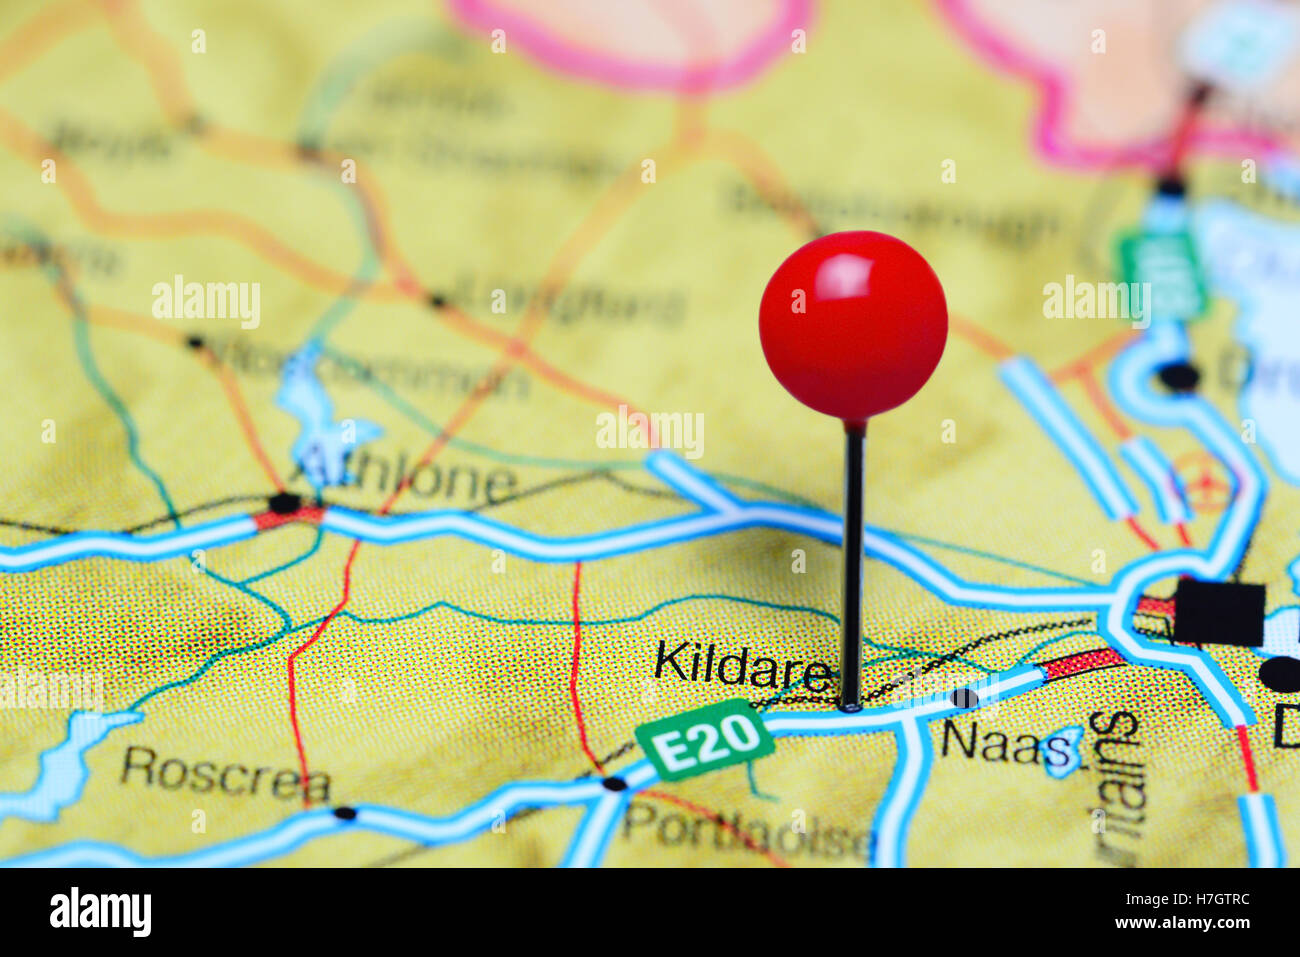 Kildare, fixiert auf einer Karte von Irland Stockfoto